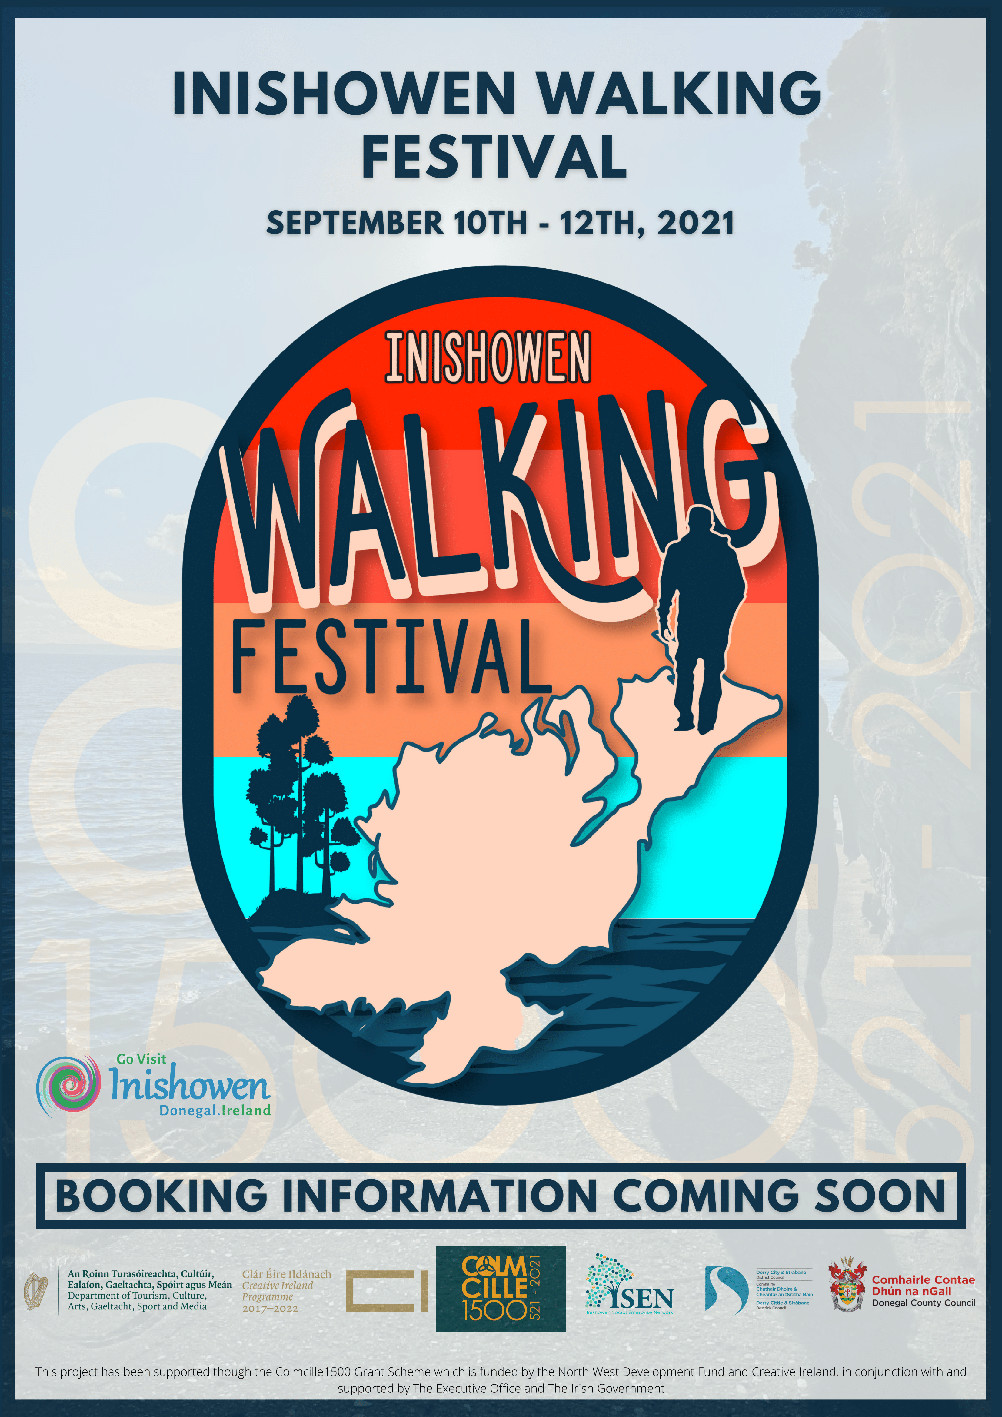 Inishowen Walking Festival 2021